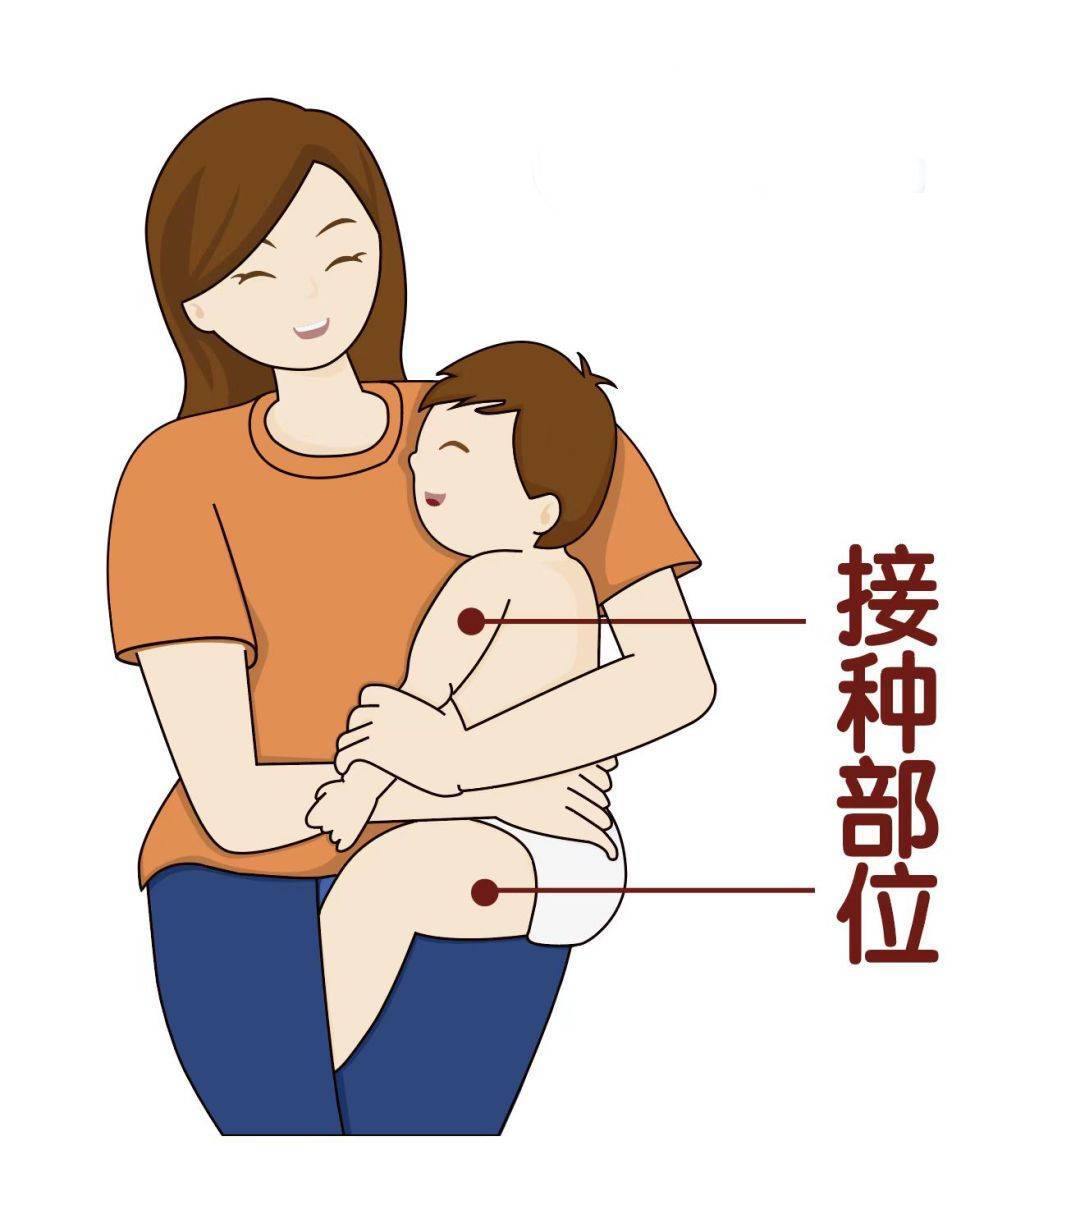 疫苗的注射部位通常为上臂外侧三角肌处和大腿前外侧中部,当多种疫苗